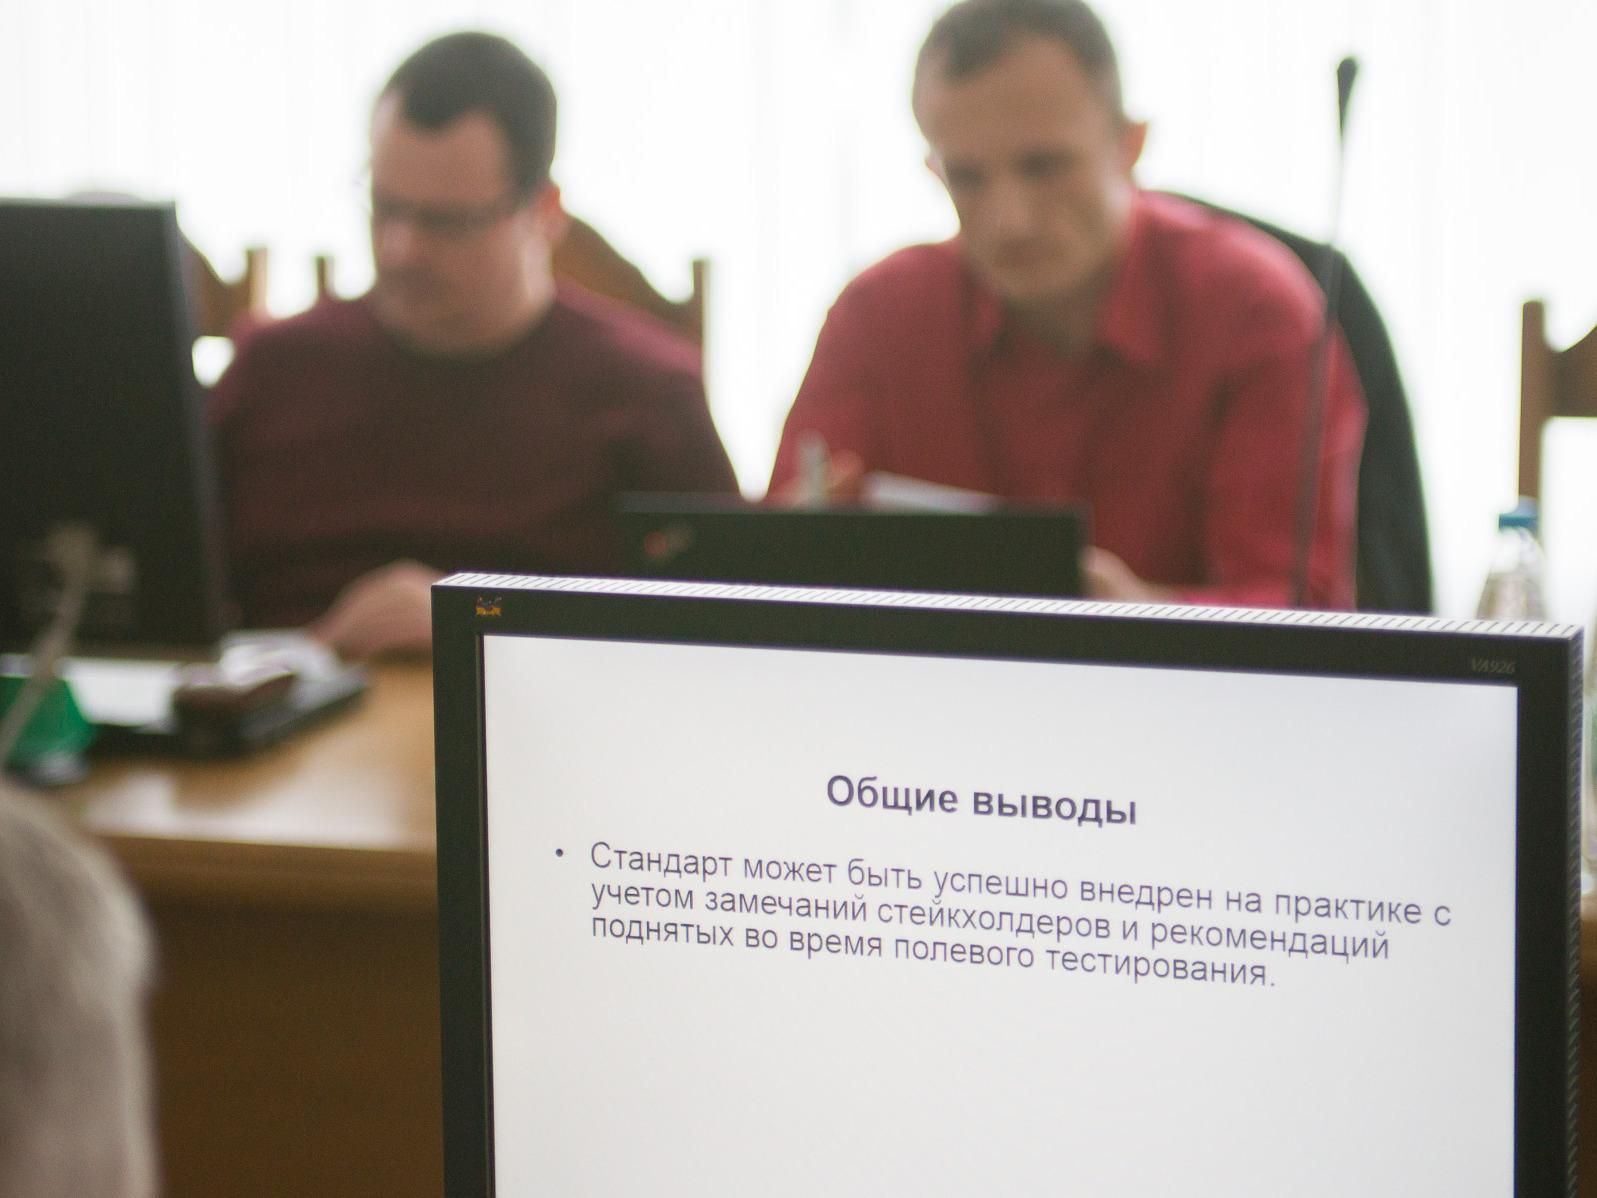 Вывод, который сделал о стандарте представитель FSC в Украине Владимир Ковалишин после участия в полевом тестировании стандарта в Беларуси  